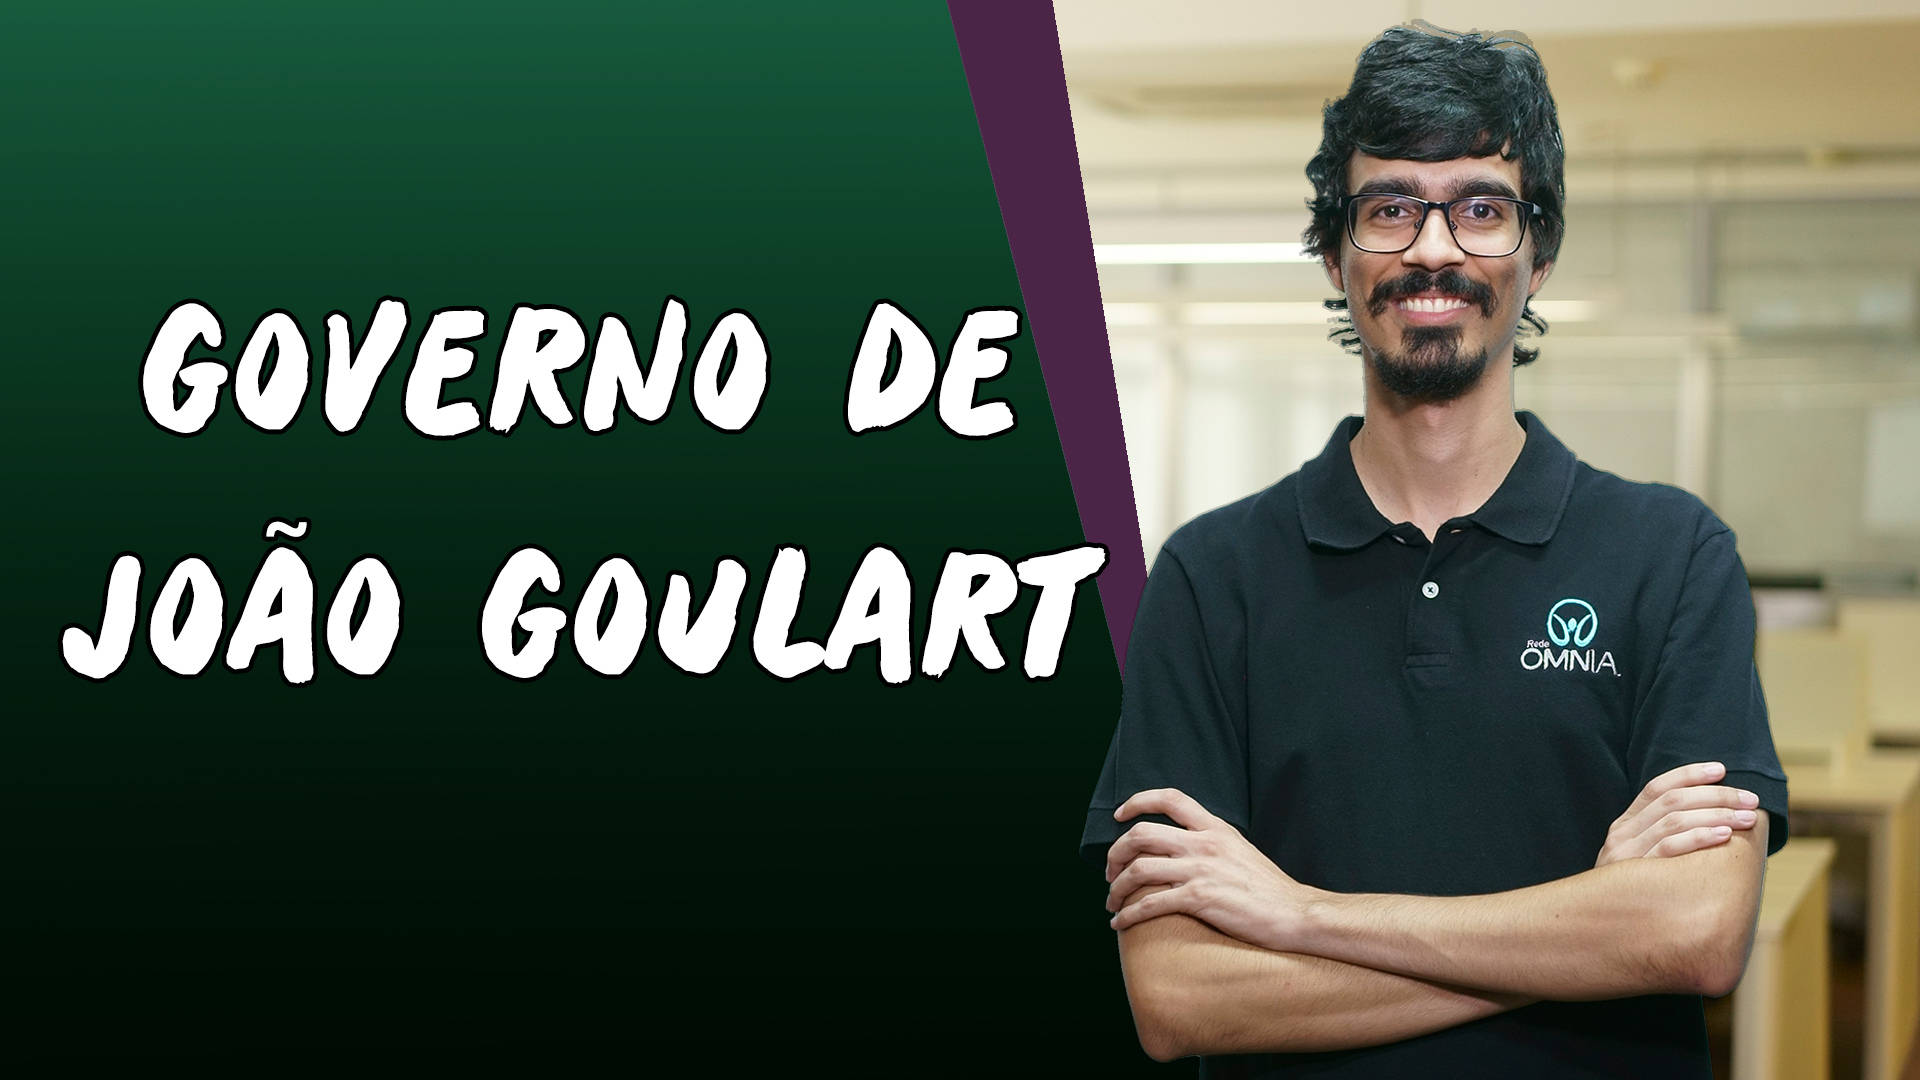 "Governo de João Goulart" escrito sobre fundo verde ao lado da imagem do professor